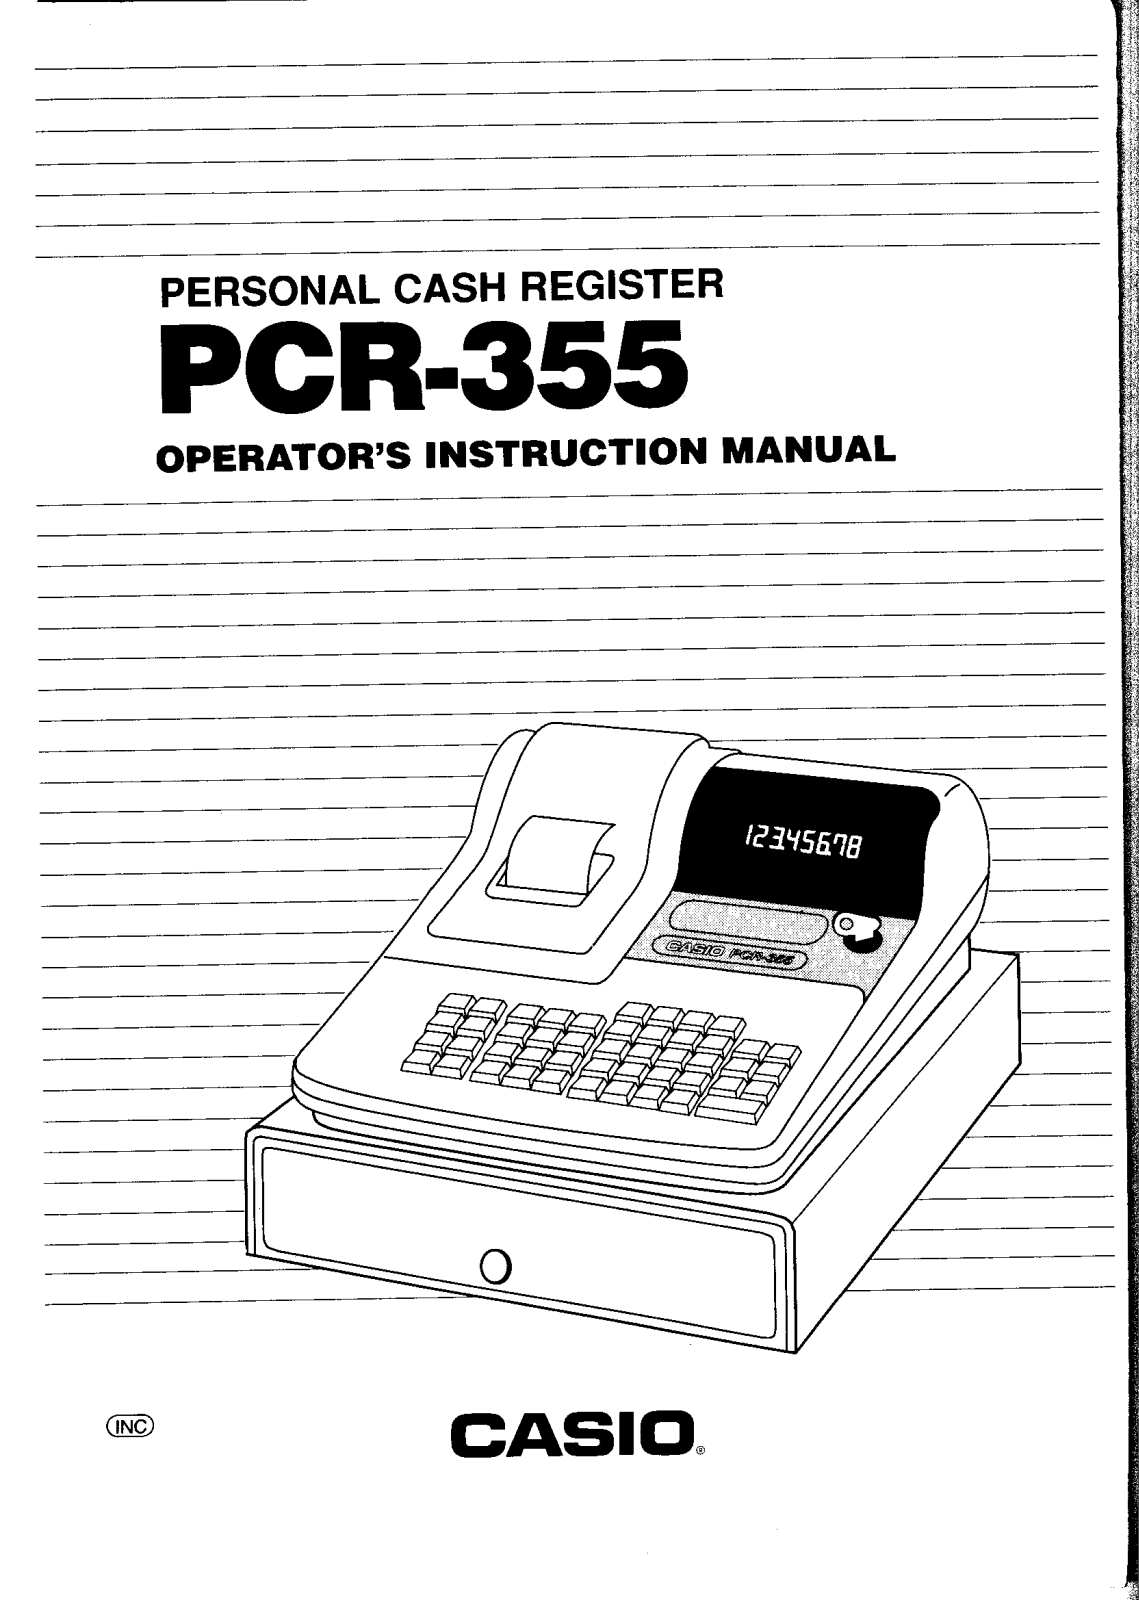 Casio PCR-355 Owner's Manual